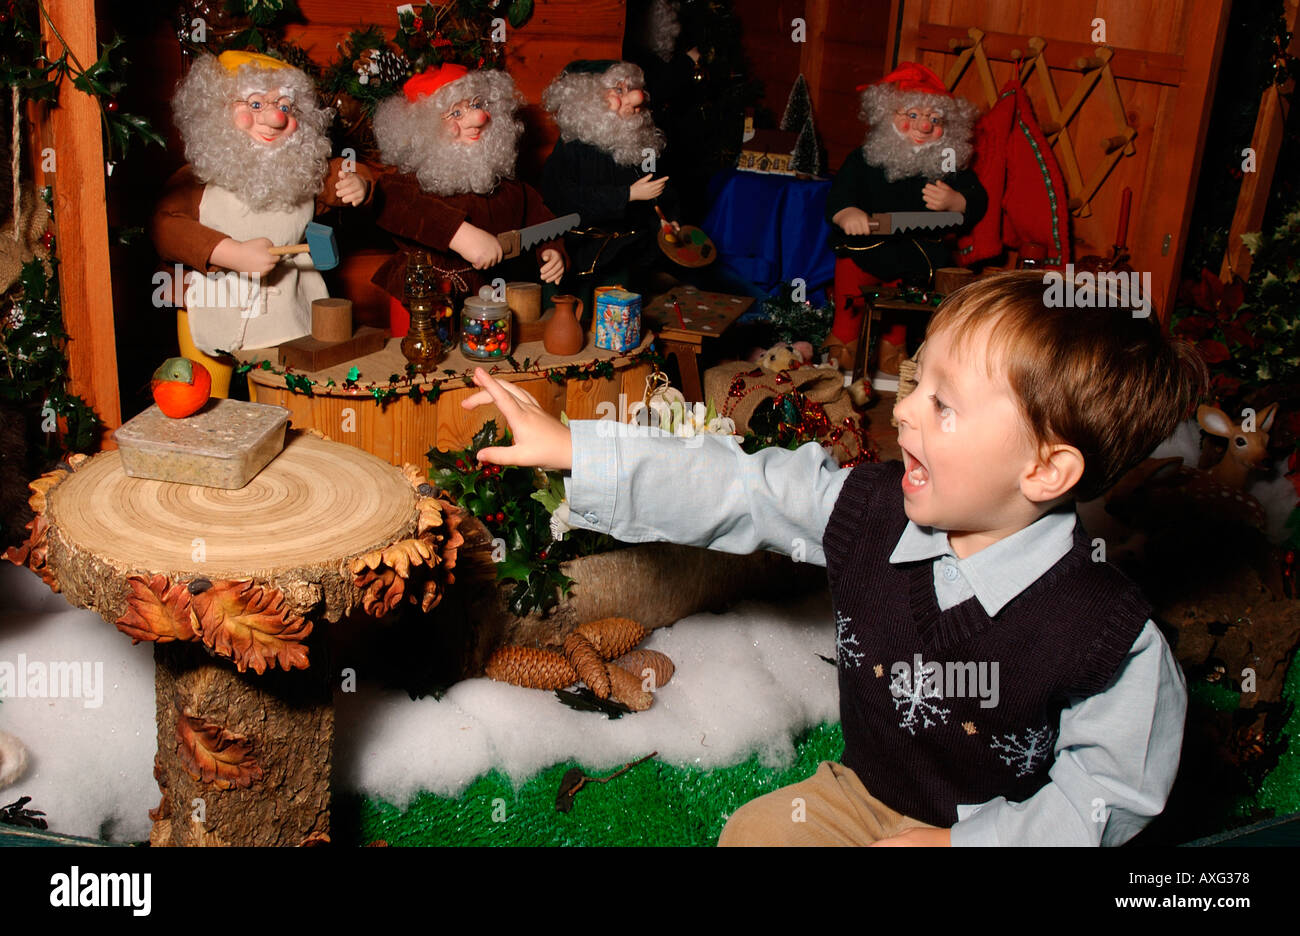 Joven jugando en santa's grotto en Navidad Foto de stock